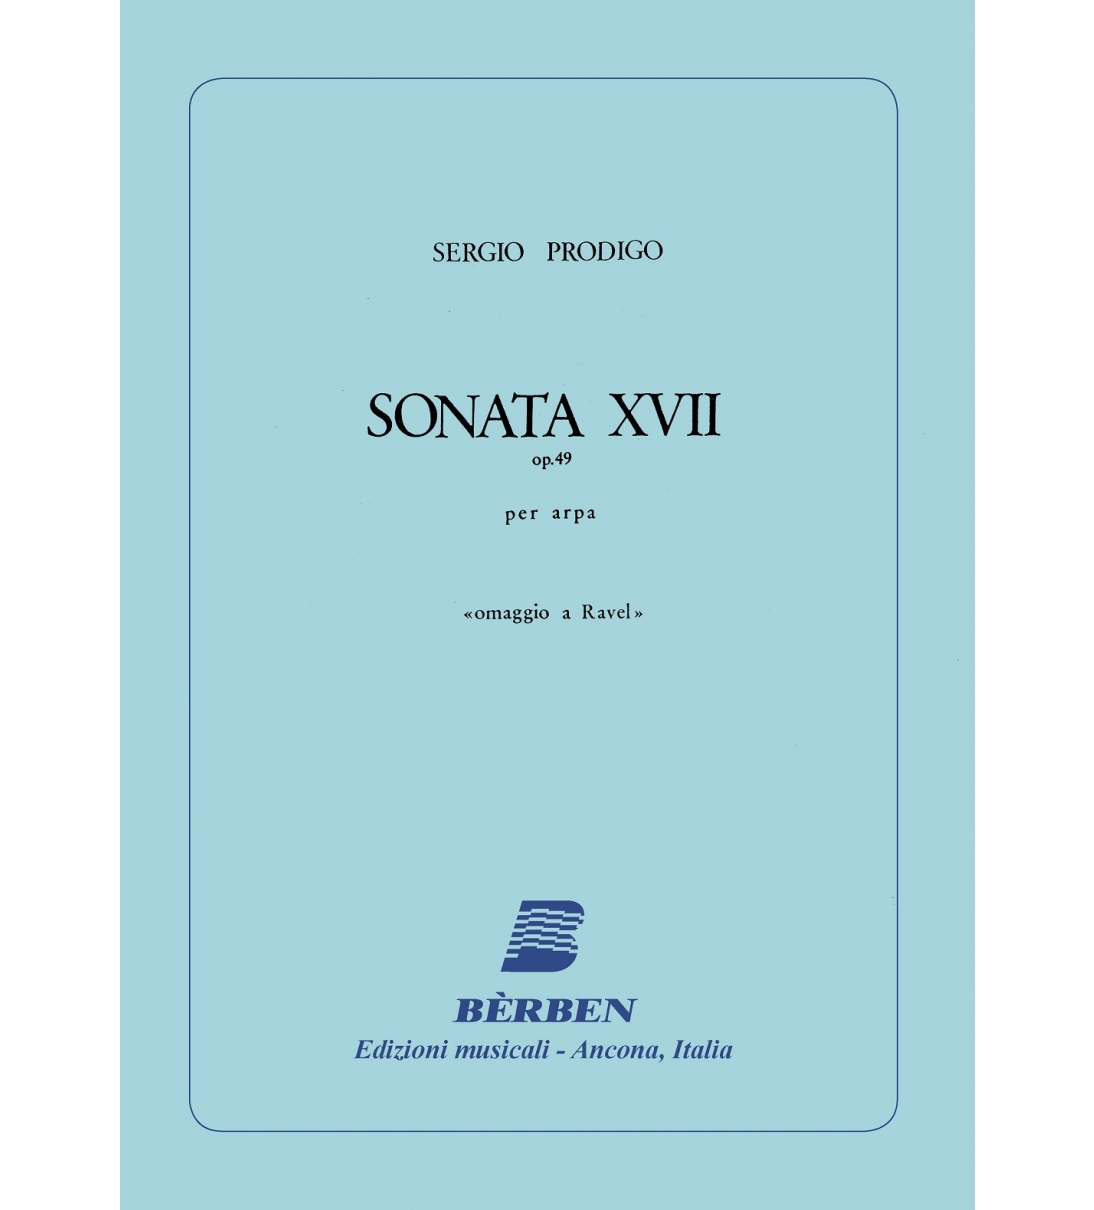 Sonata XVII op. 49 per arpa ("omaggio a Ravel")